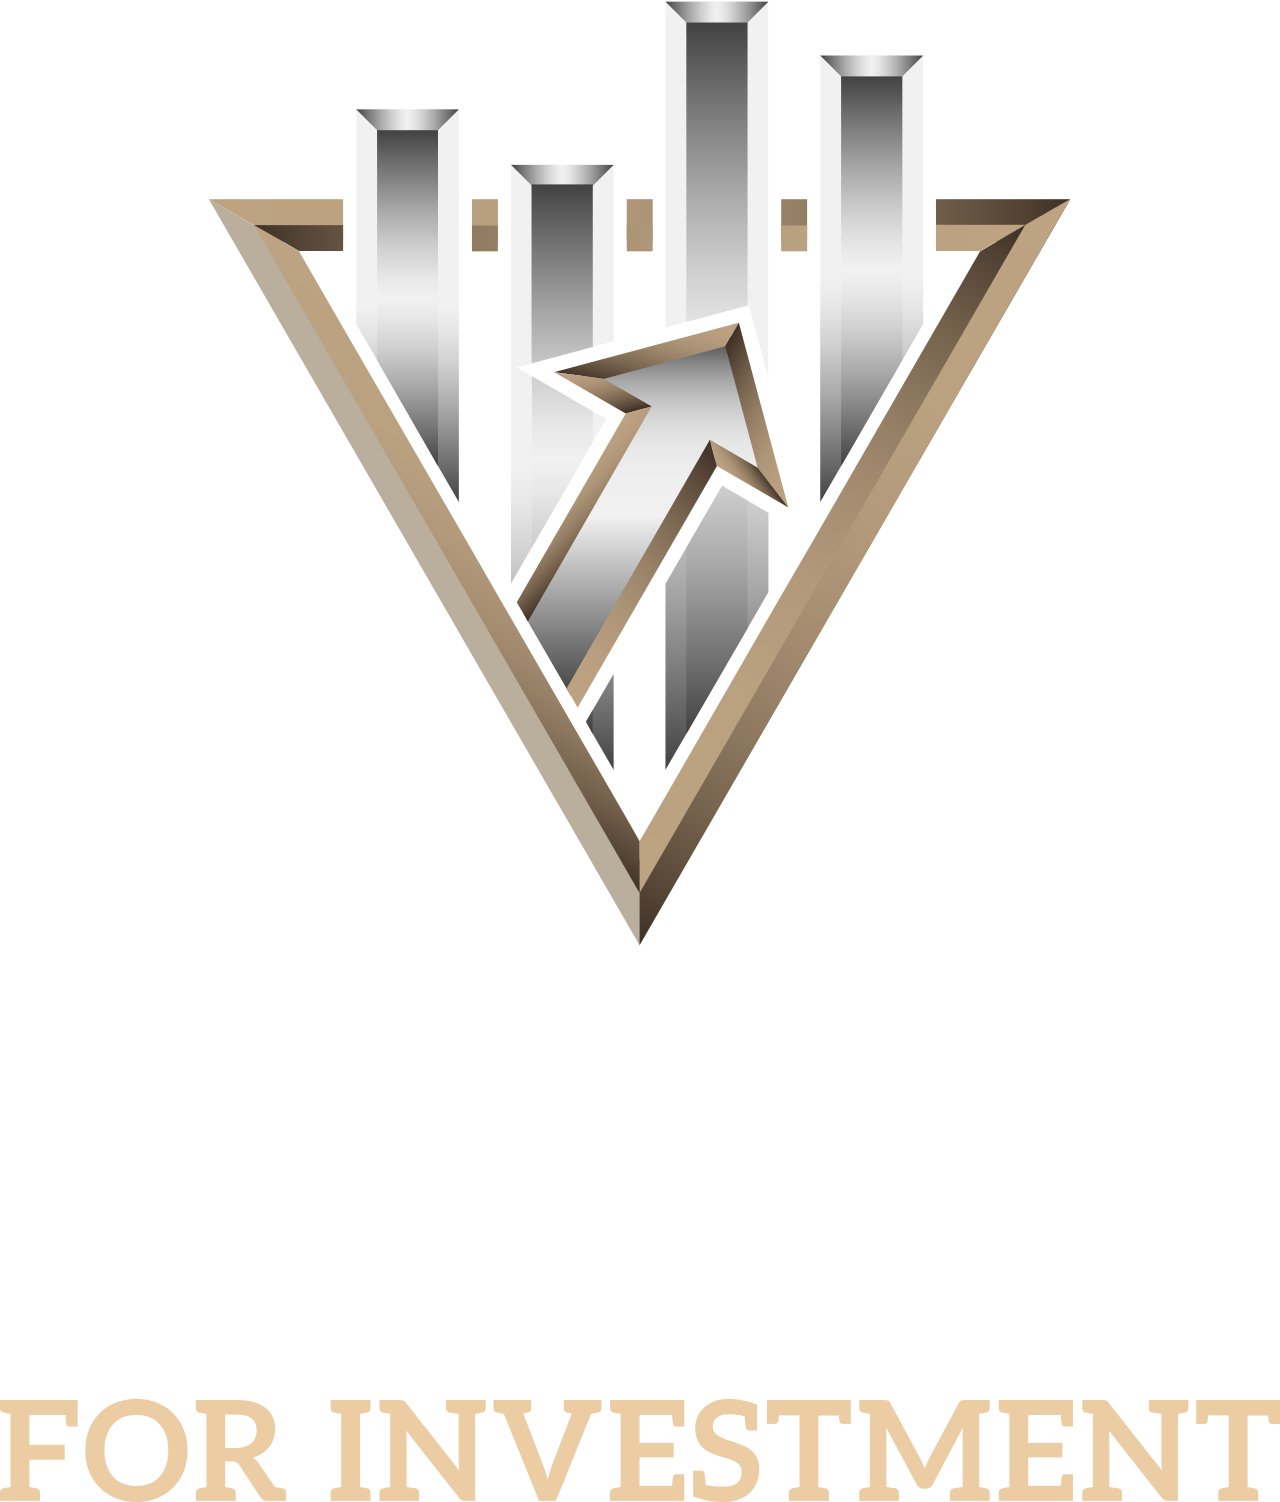 YK's logo